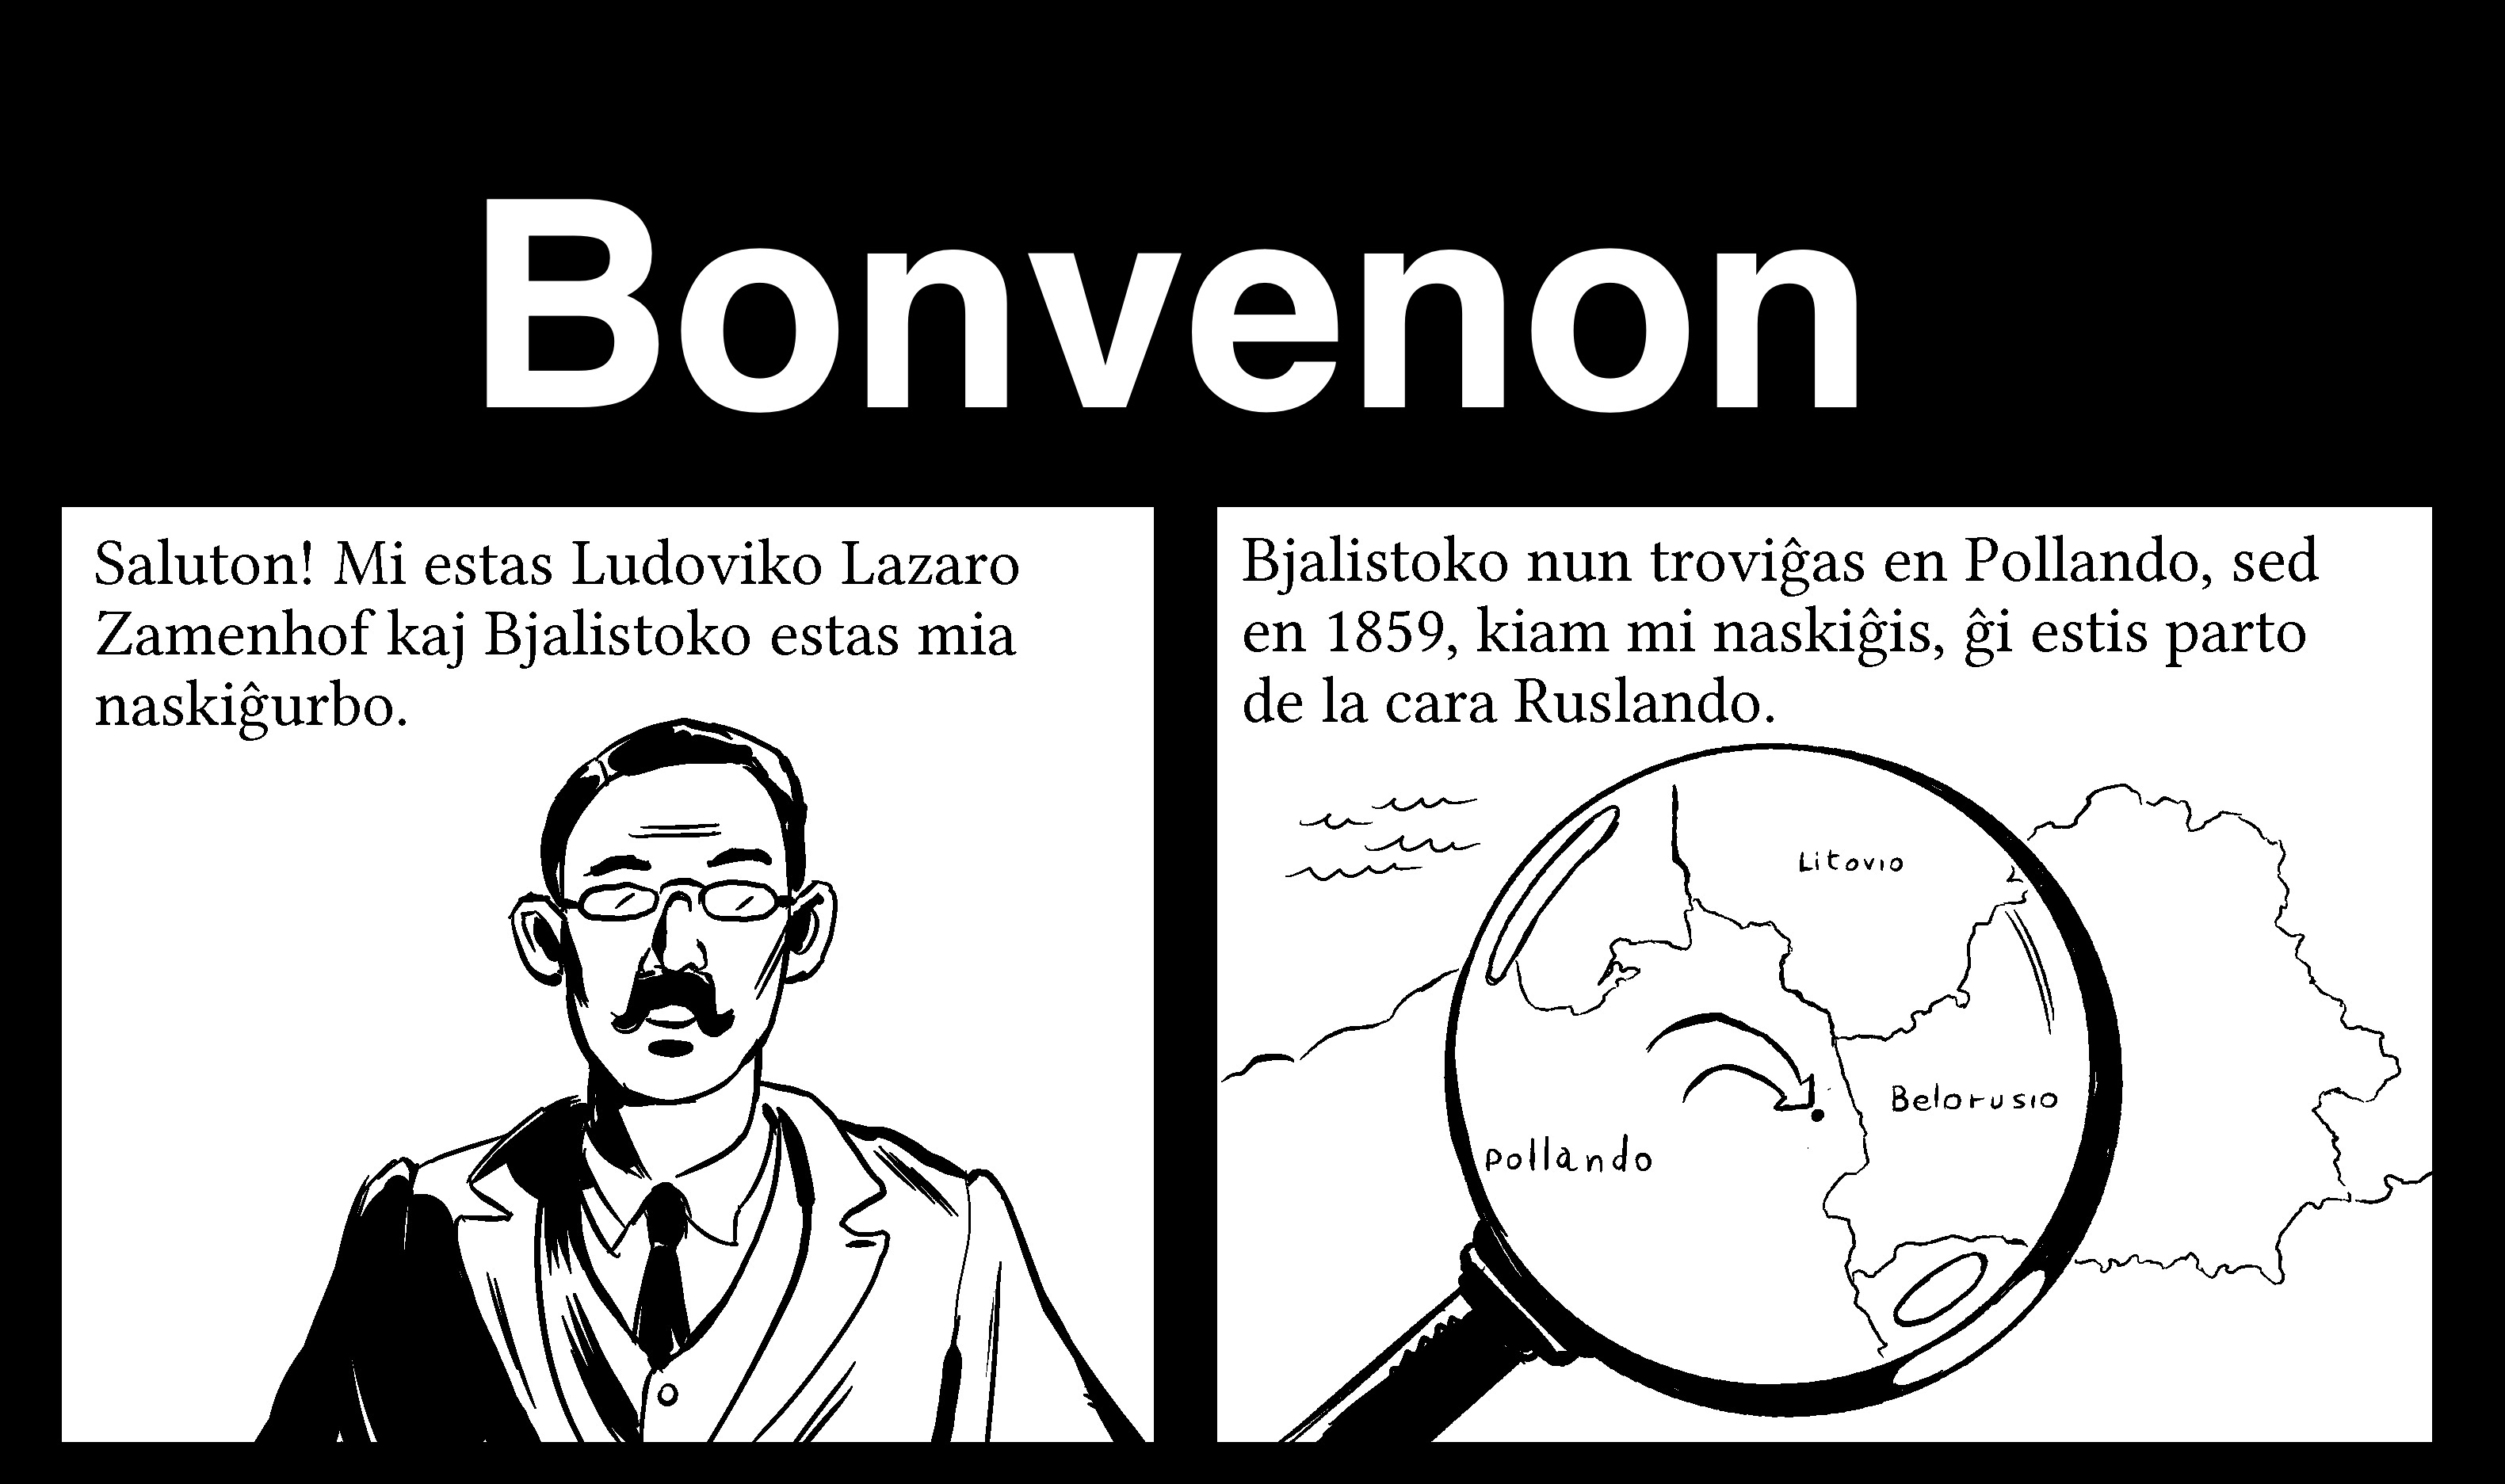 Bonvenon